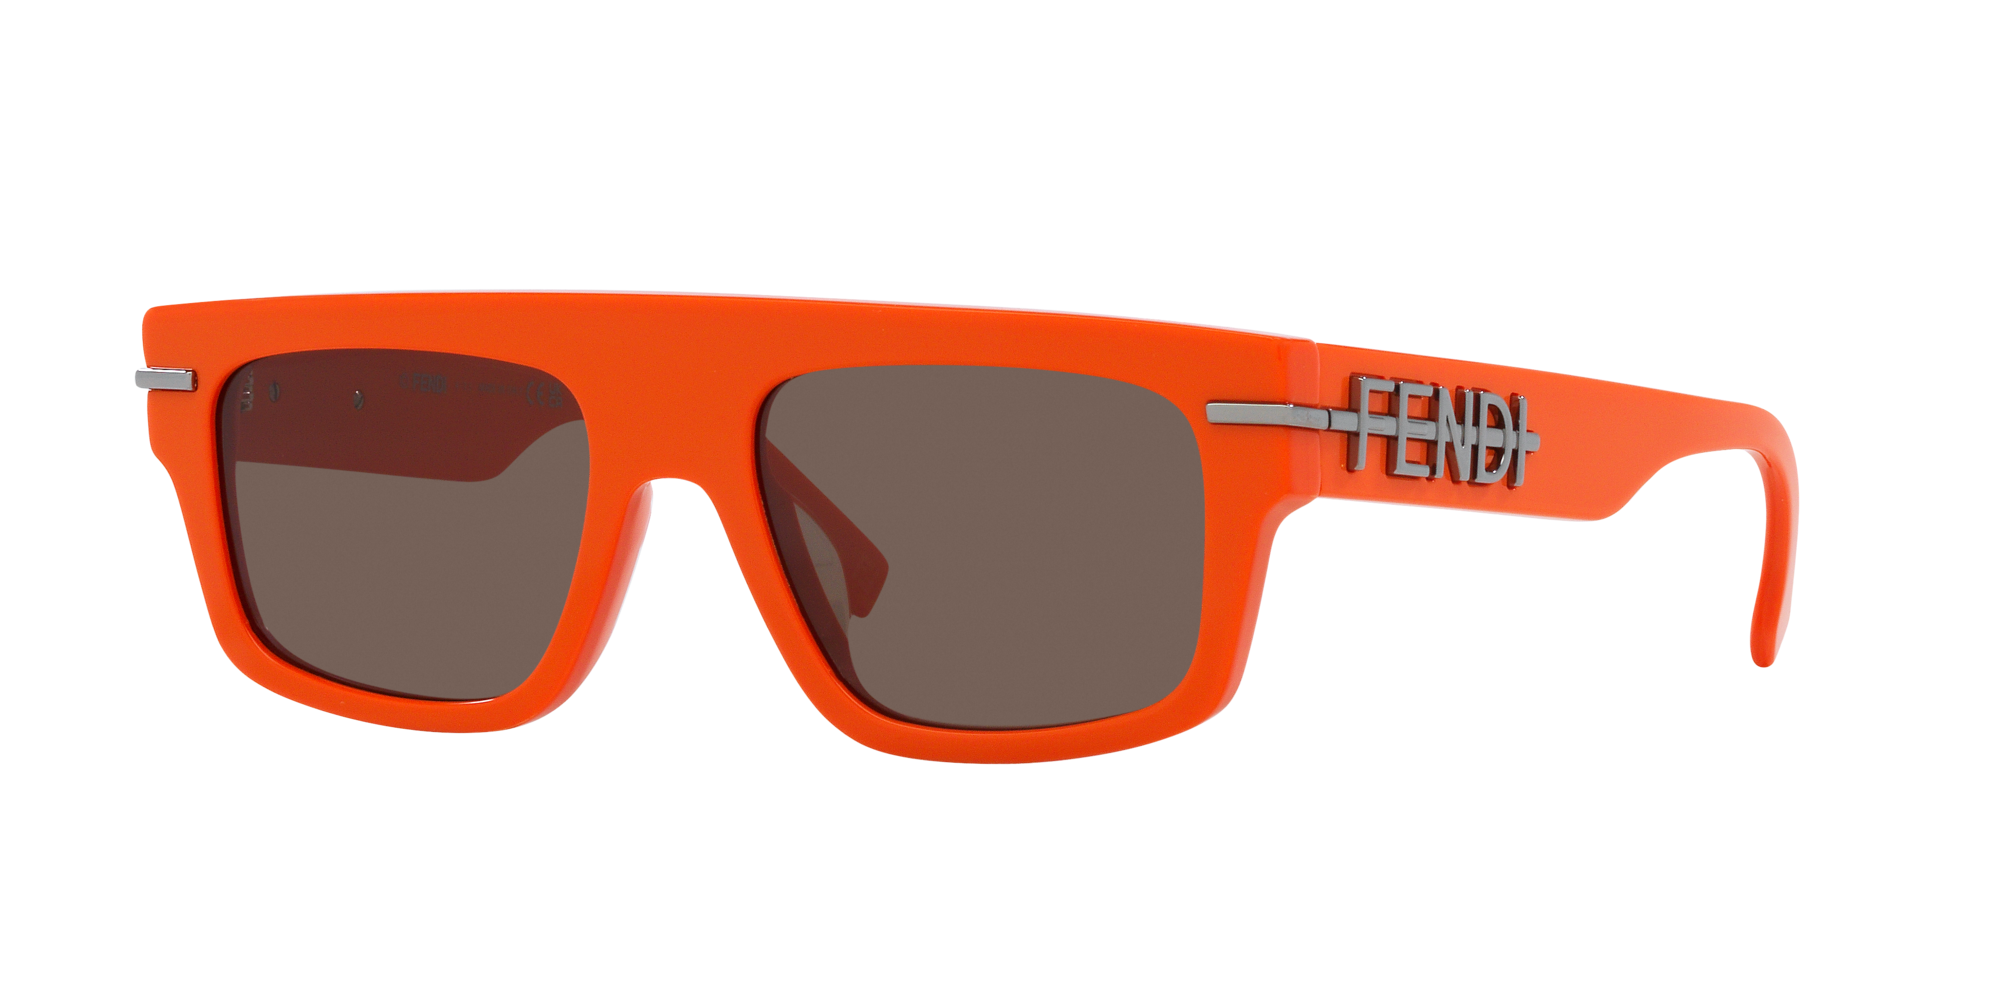 Orange Oversized Sunglasses | Sunglasses Orange Lens | Coloured Sunglasses  Orange - Sunglasses - Aliexpress